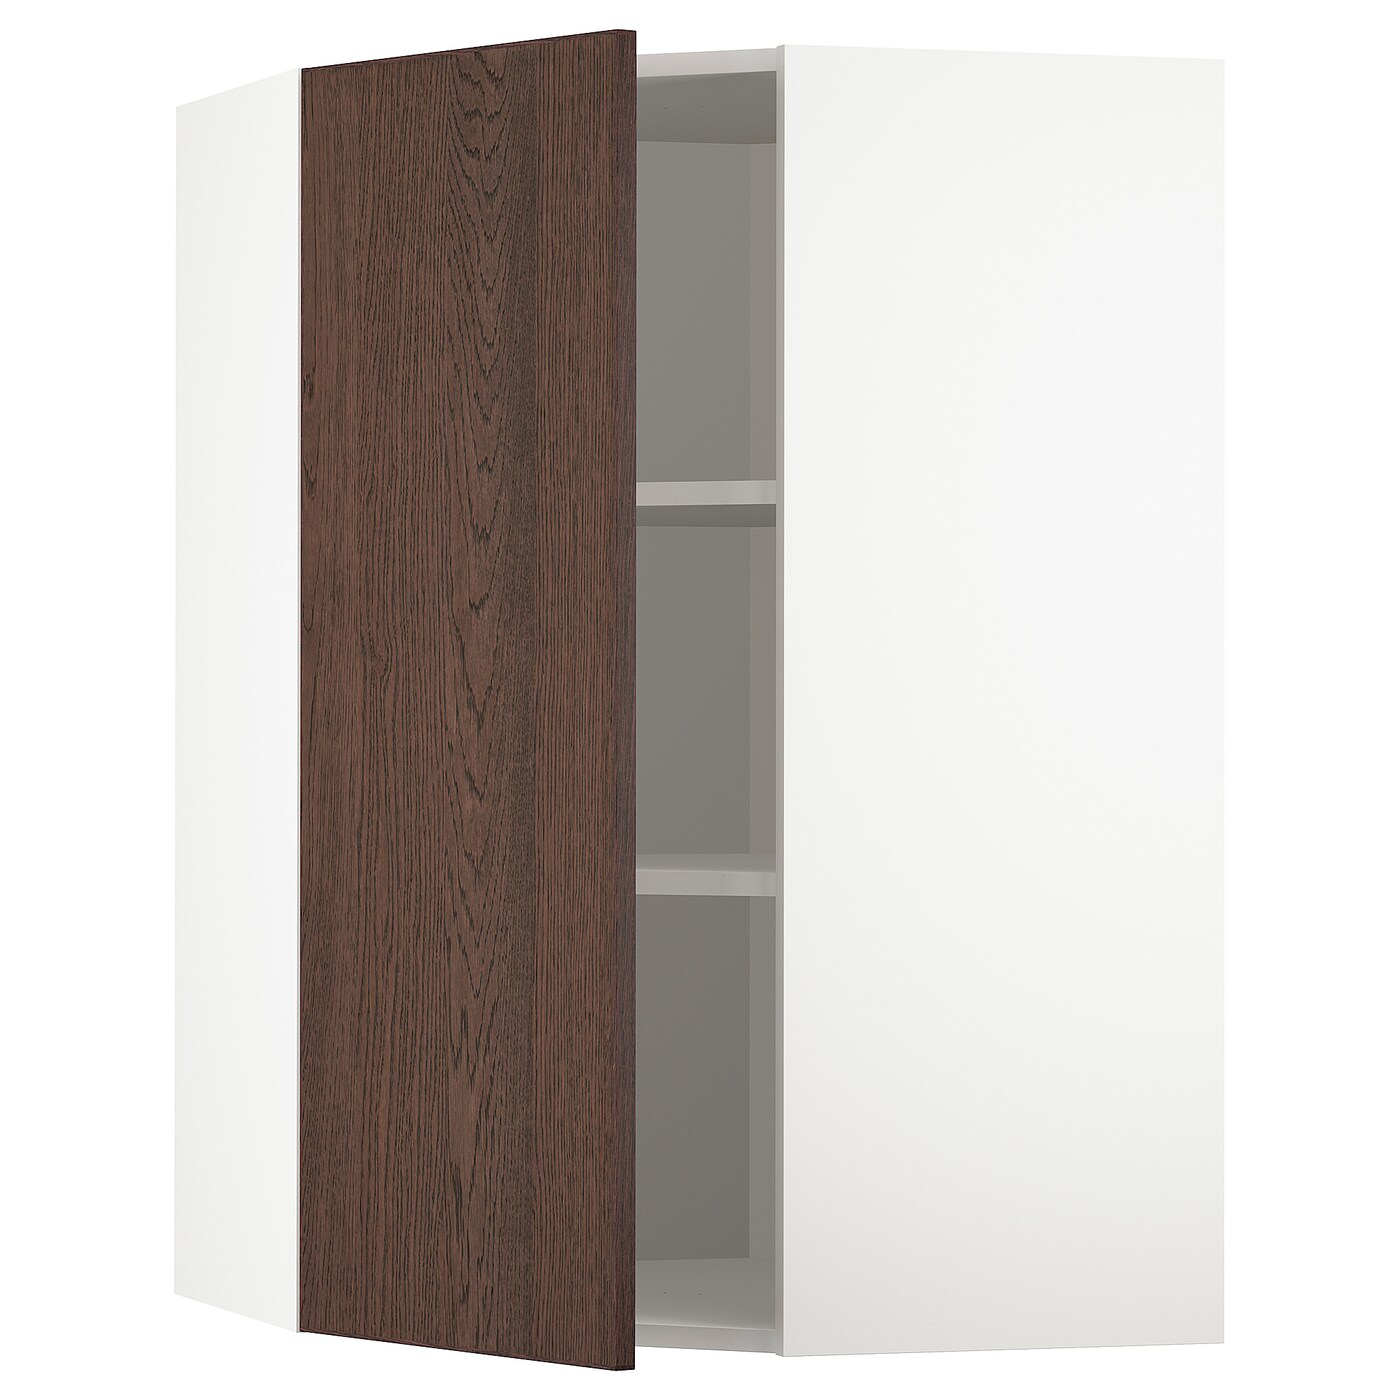 Угловой навесной шкаф с полками - METOD  IKEA/  МЕТОД ИКЕА, 100х68 см, белый/коричневый